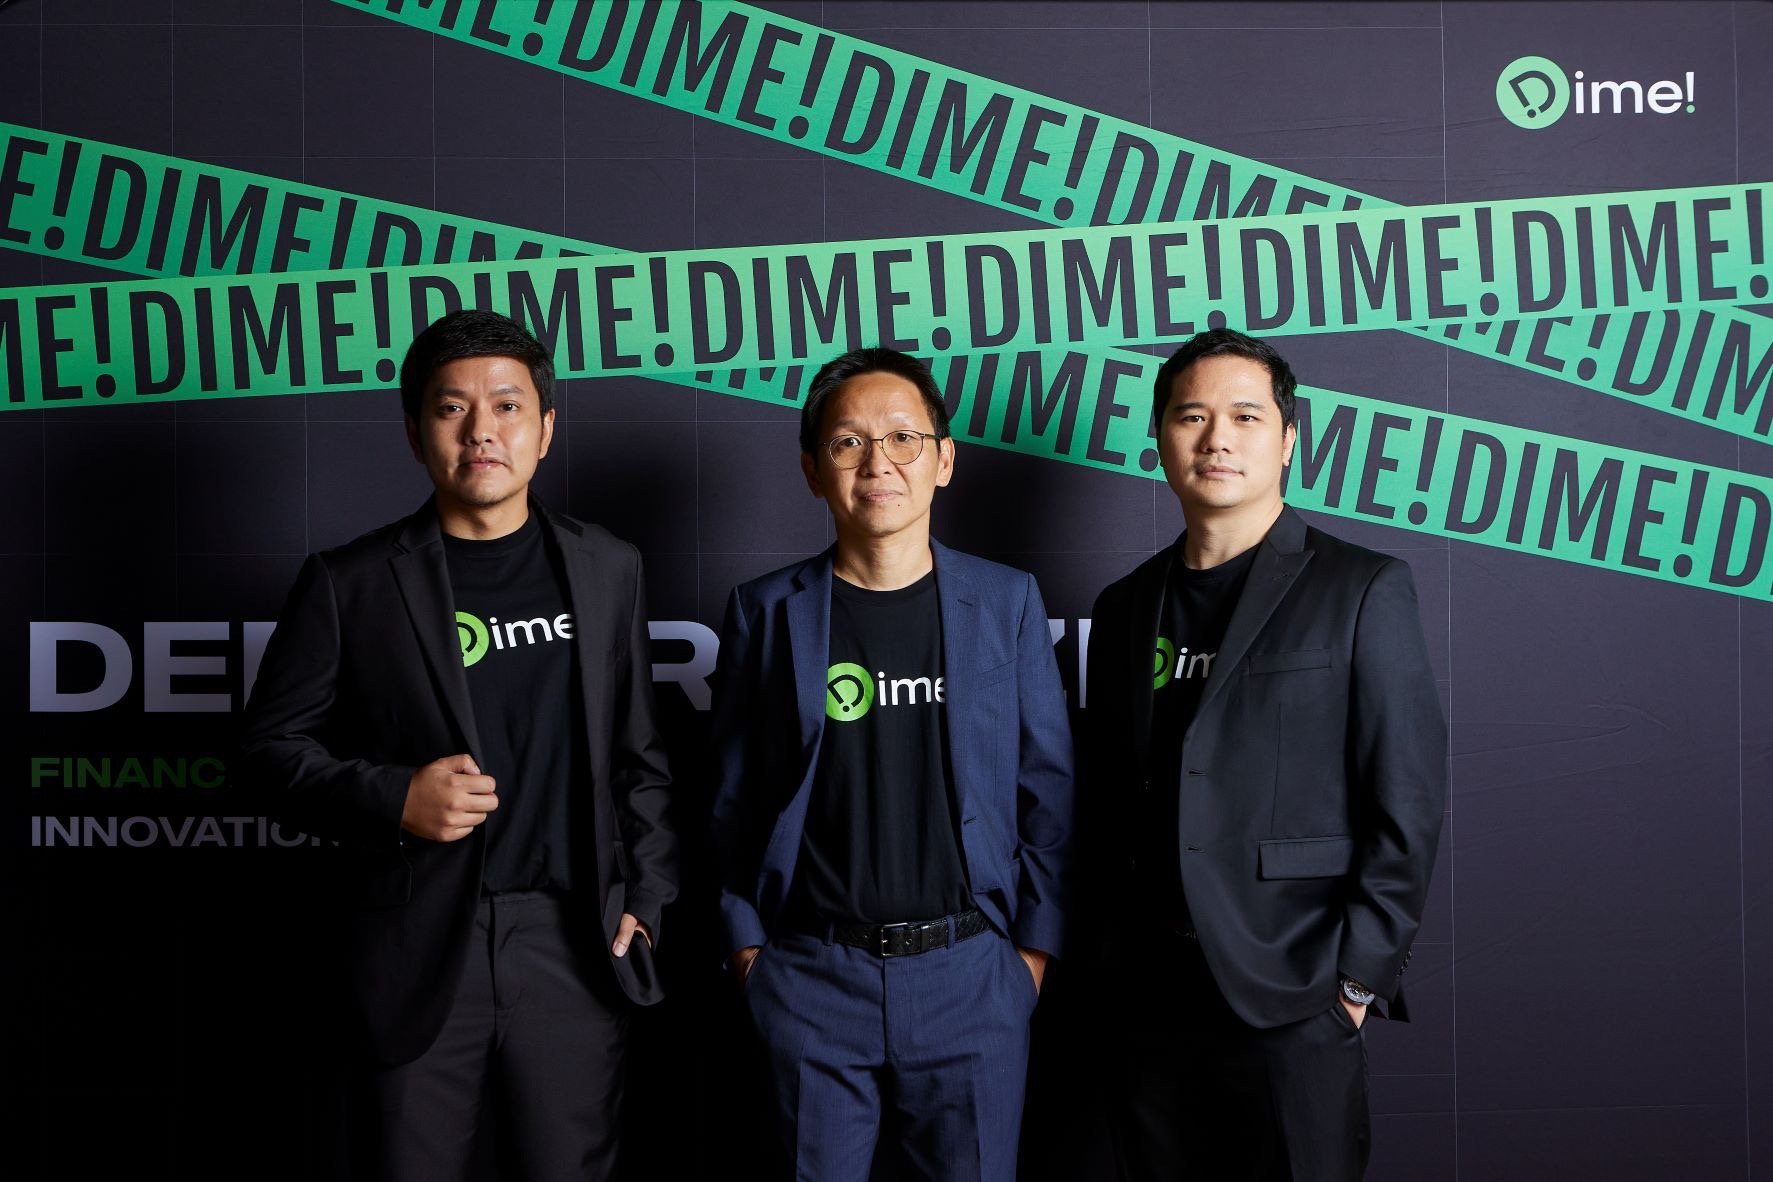 กลุ่ม KKP เปิดตัวแอป Dime! มิติใหม่การออมและการลงทุน ทั้งเงินฝาก หุ้นไทย เทศ